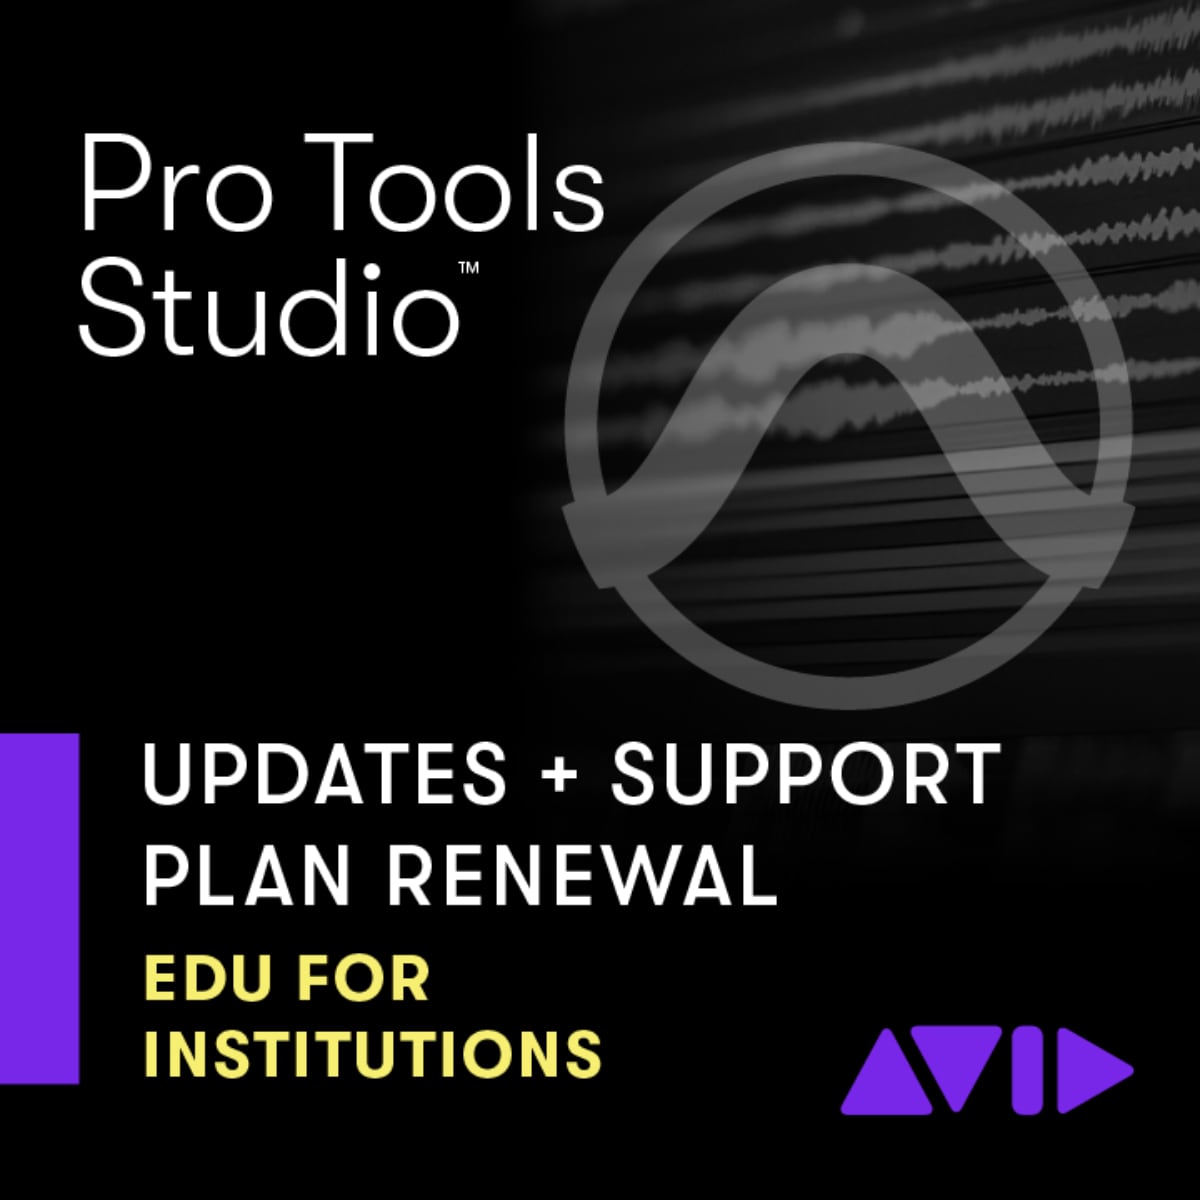 Pro Tools Studio Perpetual Annual Updates + Support Renewal EDU Institution